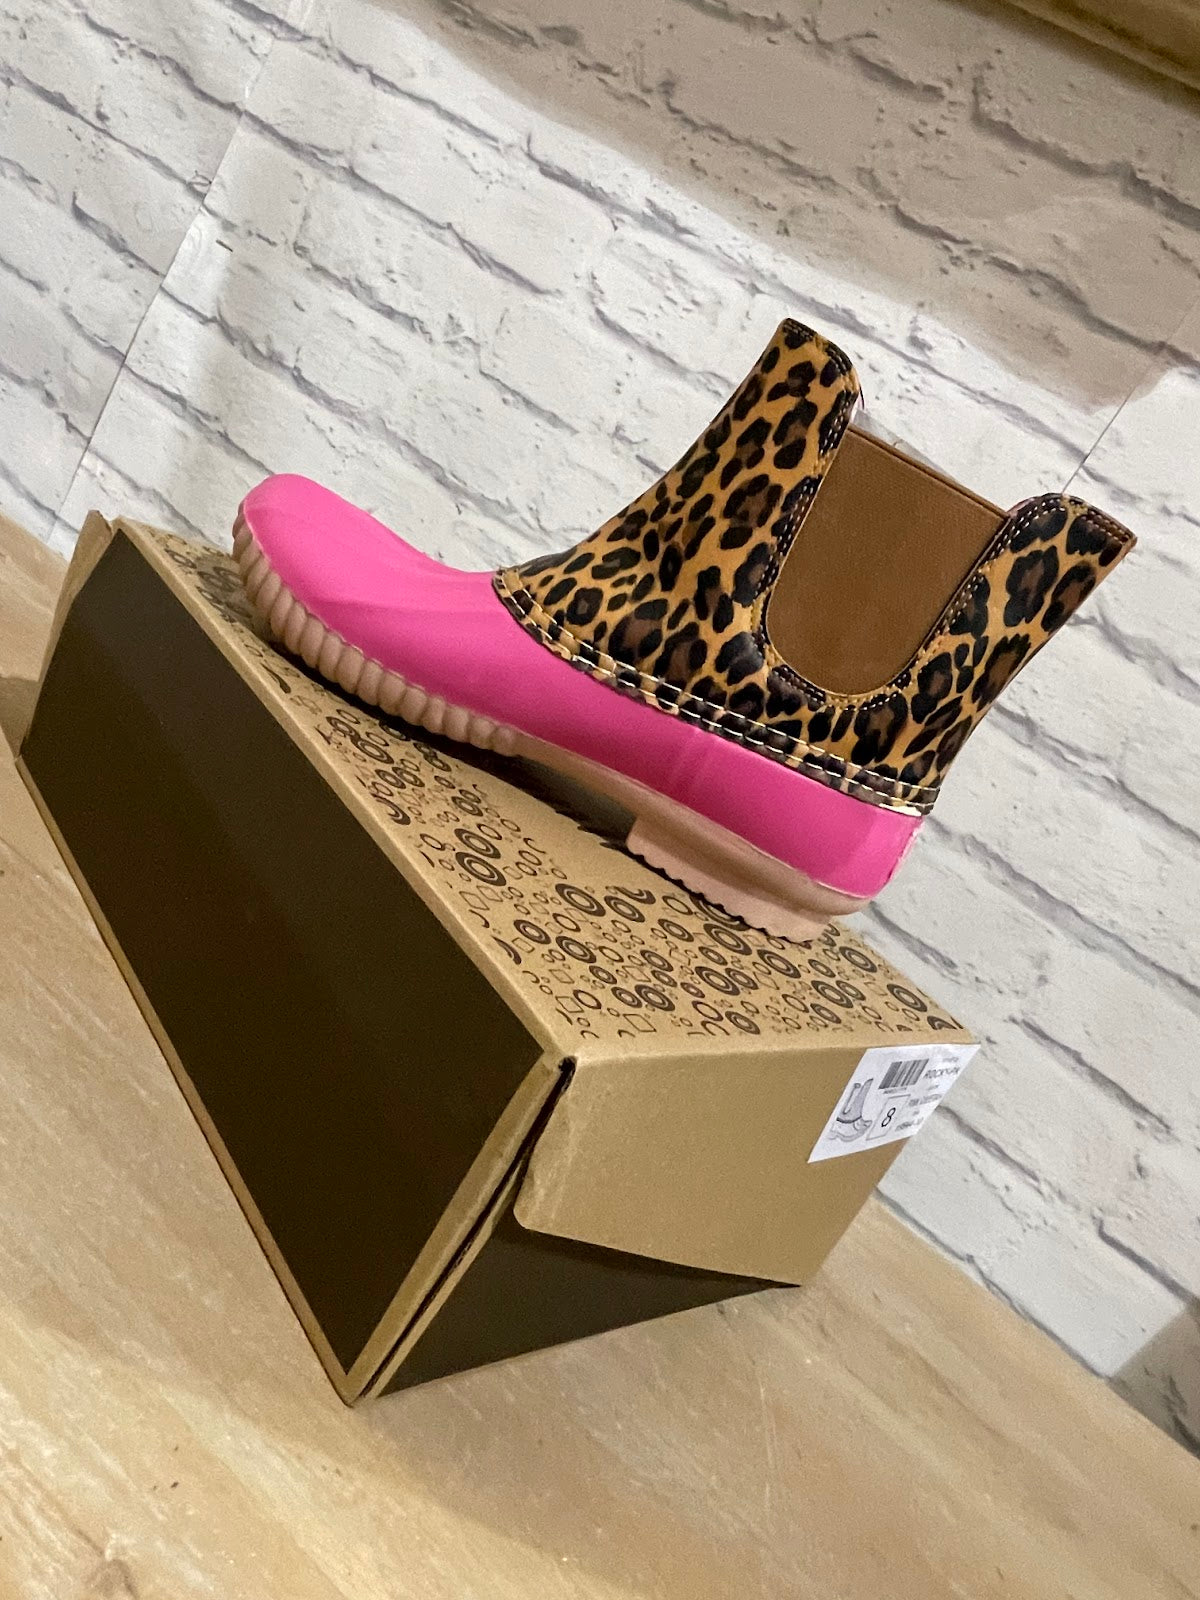 Pink Cheetah Boots